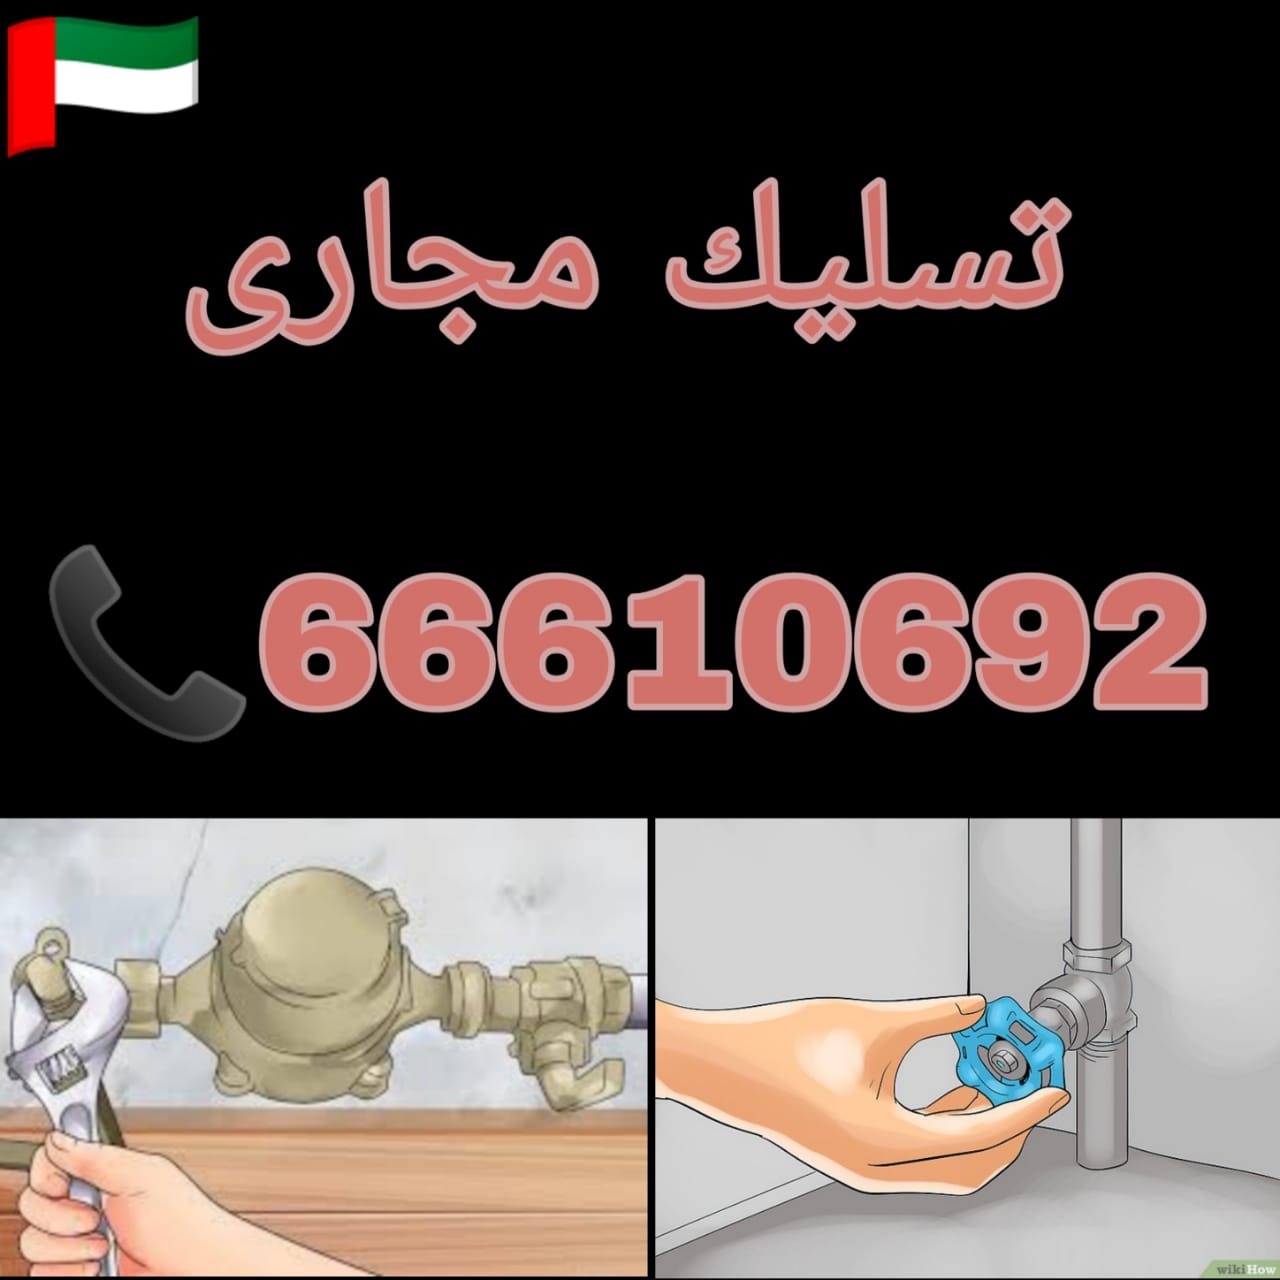 رقم شركة تسليك مجاري الكويت  / 66610692 / صيانة وتركيب فني صحي الكويت